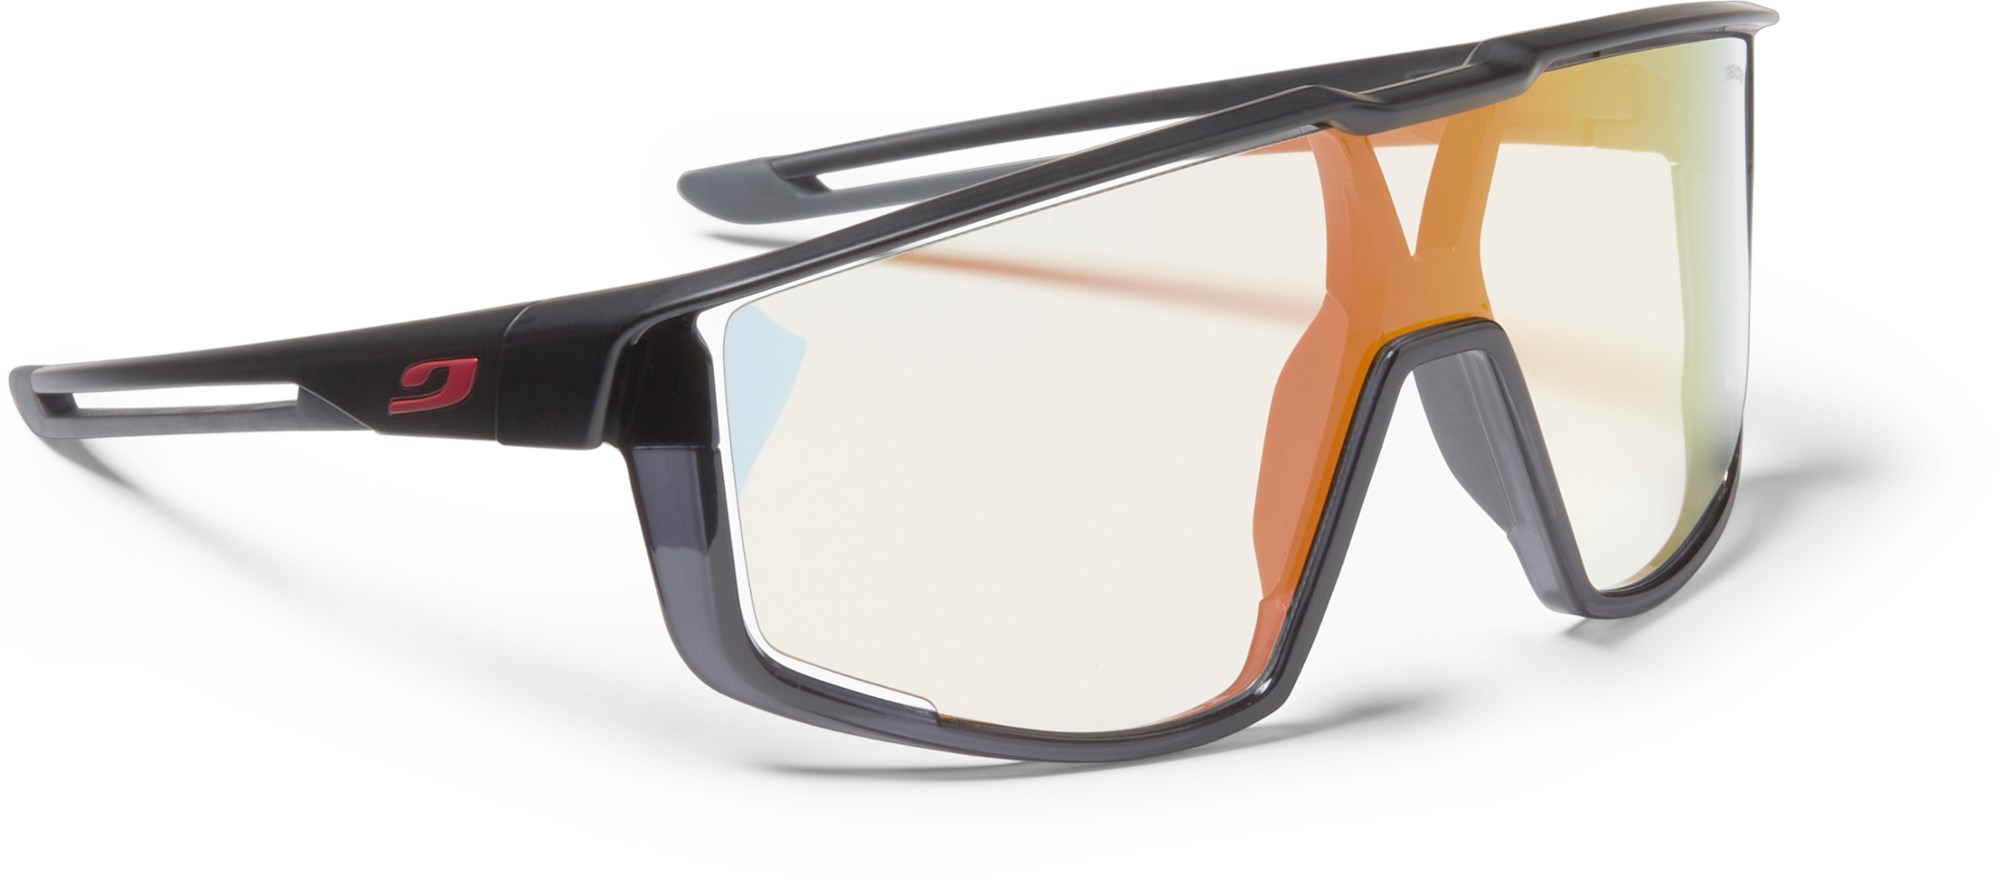 Солнцезащитные очки Fury Julbo, черный уличные солнцезащитные очки спортивные солнцезащитные очки велосипедные очки спортивные солнцезащитные очки uv380 велосипедные очки сол